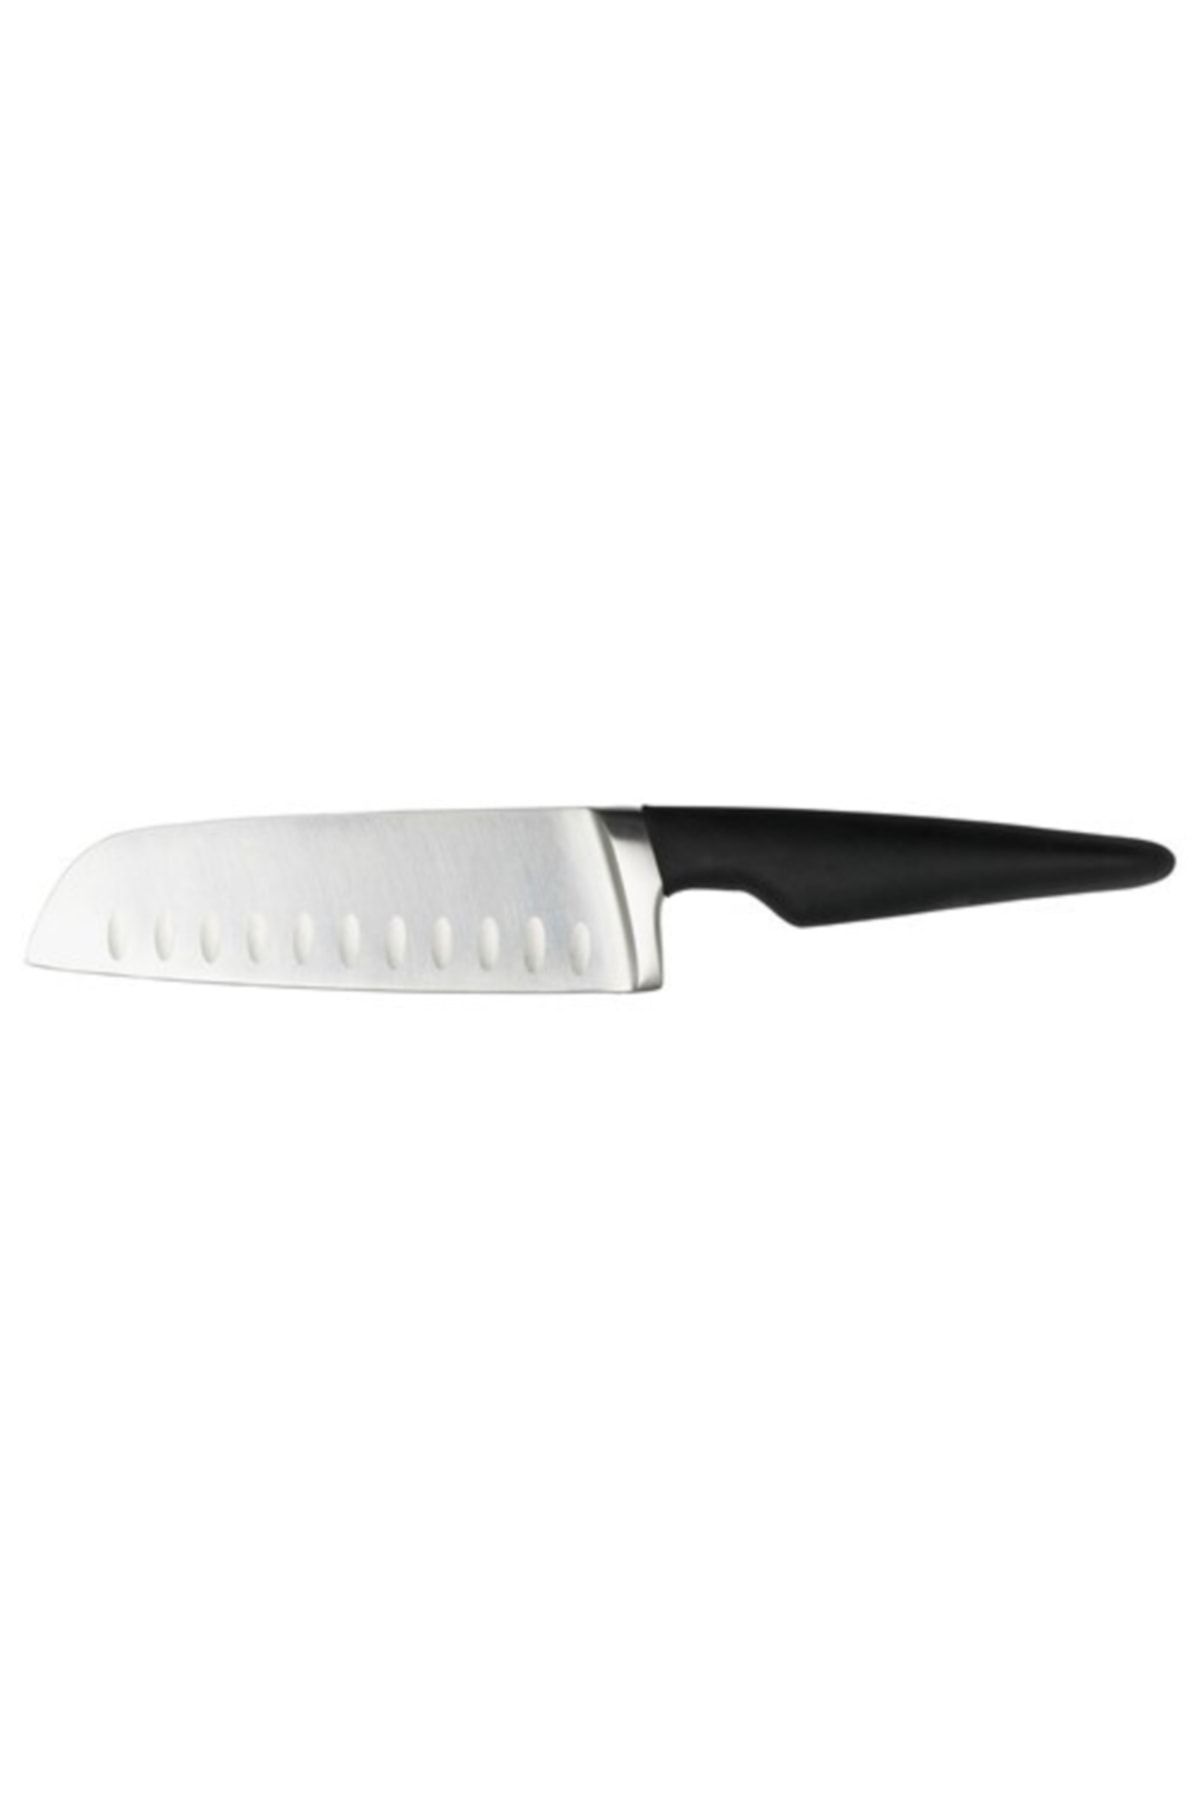 IKEA Vörda Sebze Bıçağı Siyah ( 30 Cm ) Bıçak 16 Cm Paslanmaz Çelik